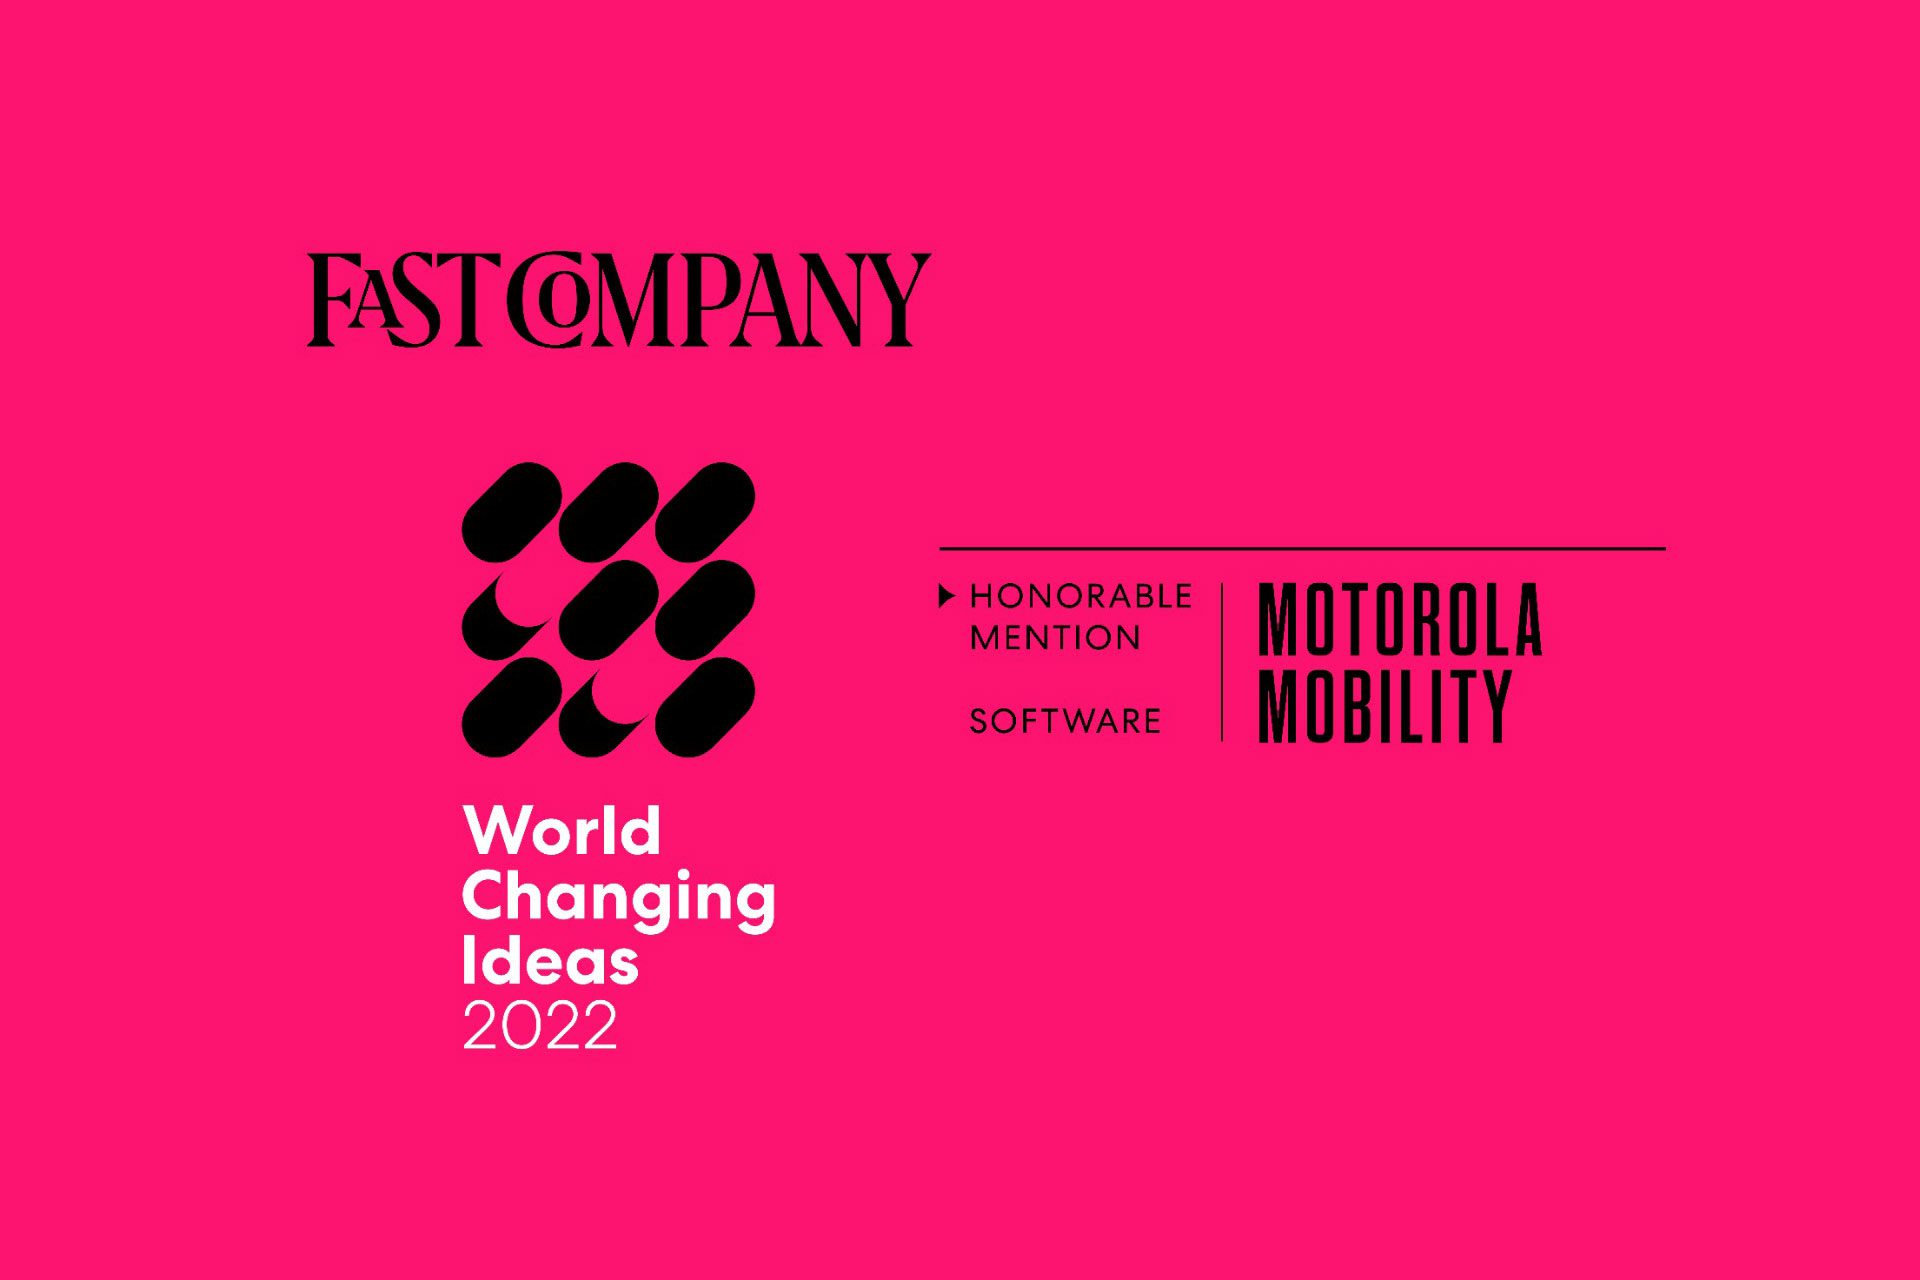 Iniciativa da Motorola ganha menção honrosa na premiação World Changing Ideas 2022 da Fast Company